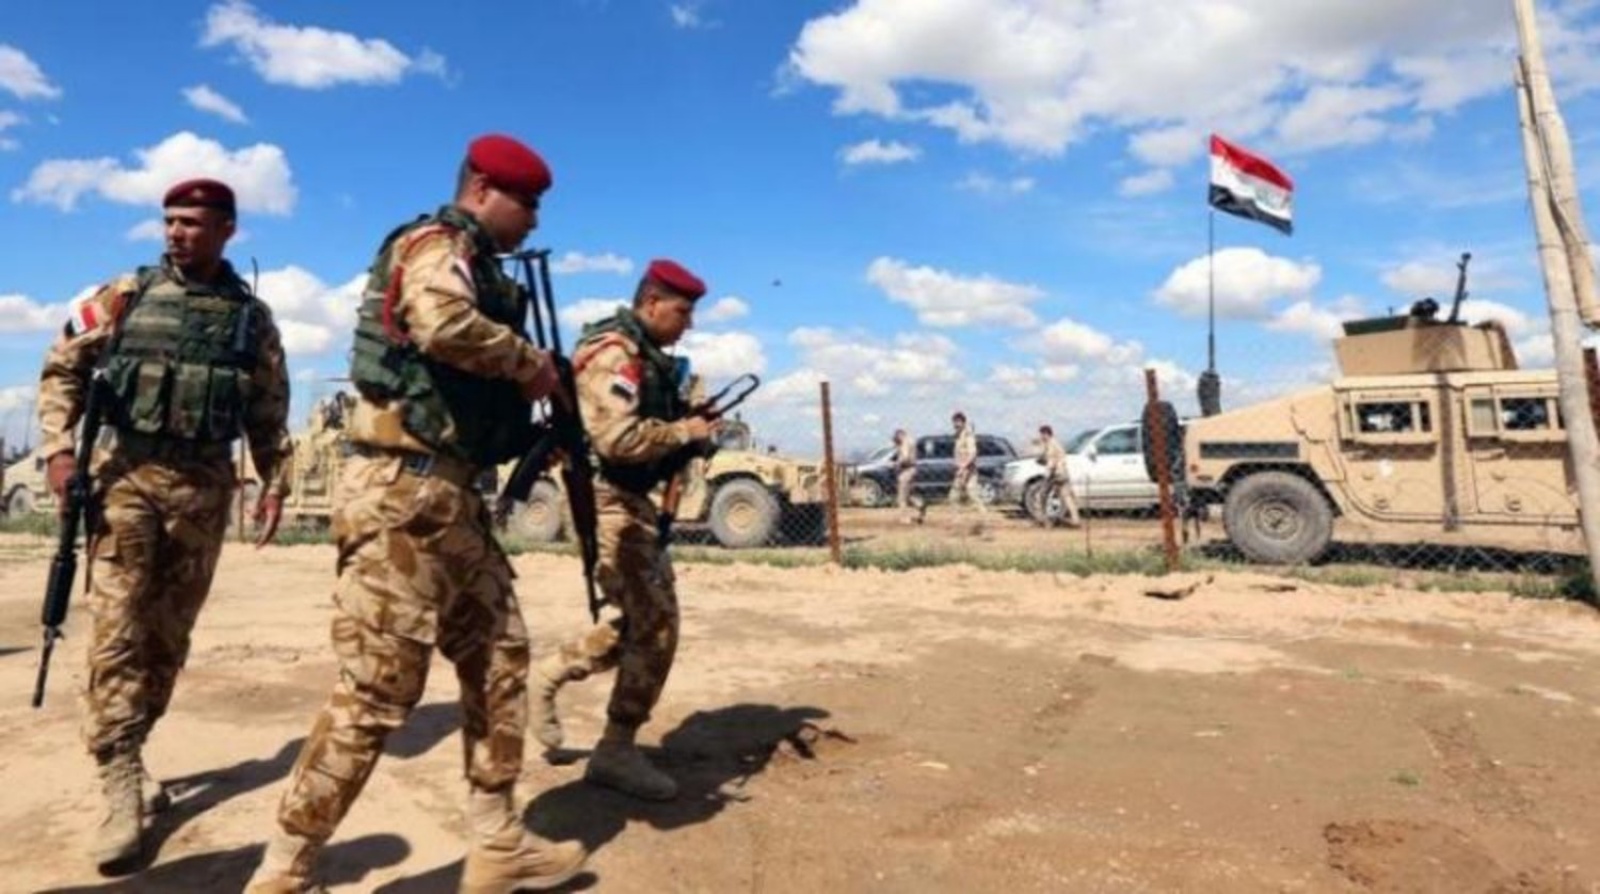 عناصر من الجيش العراقي